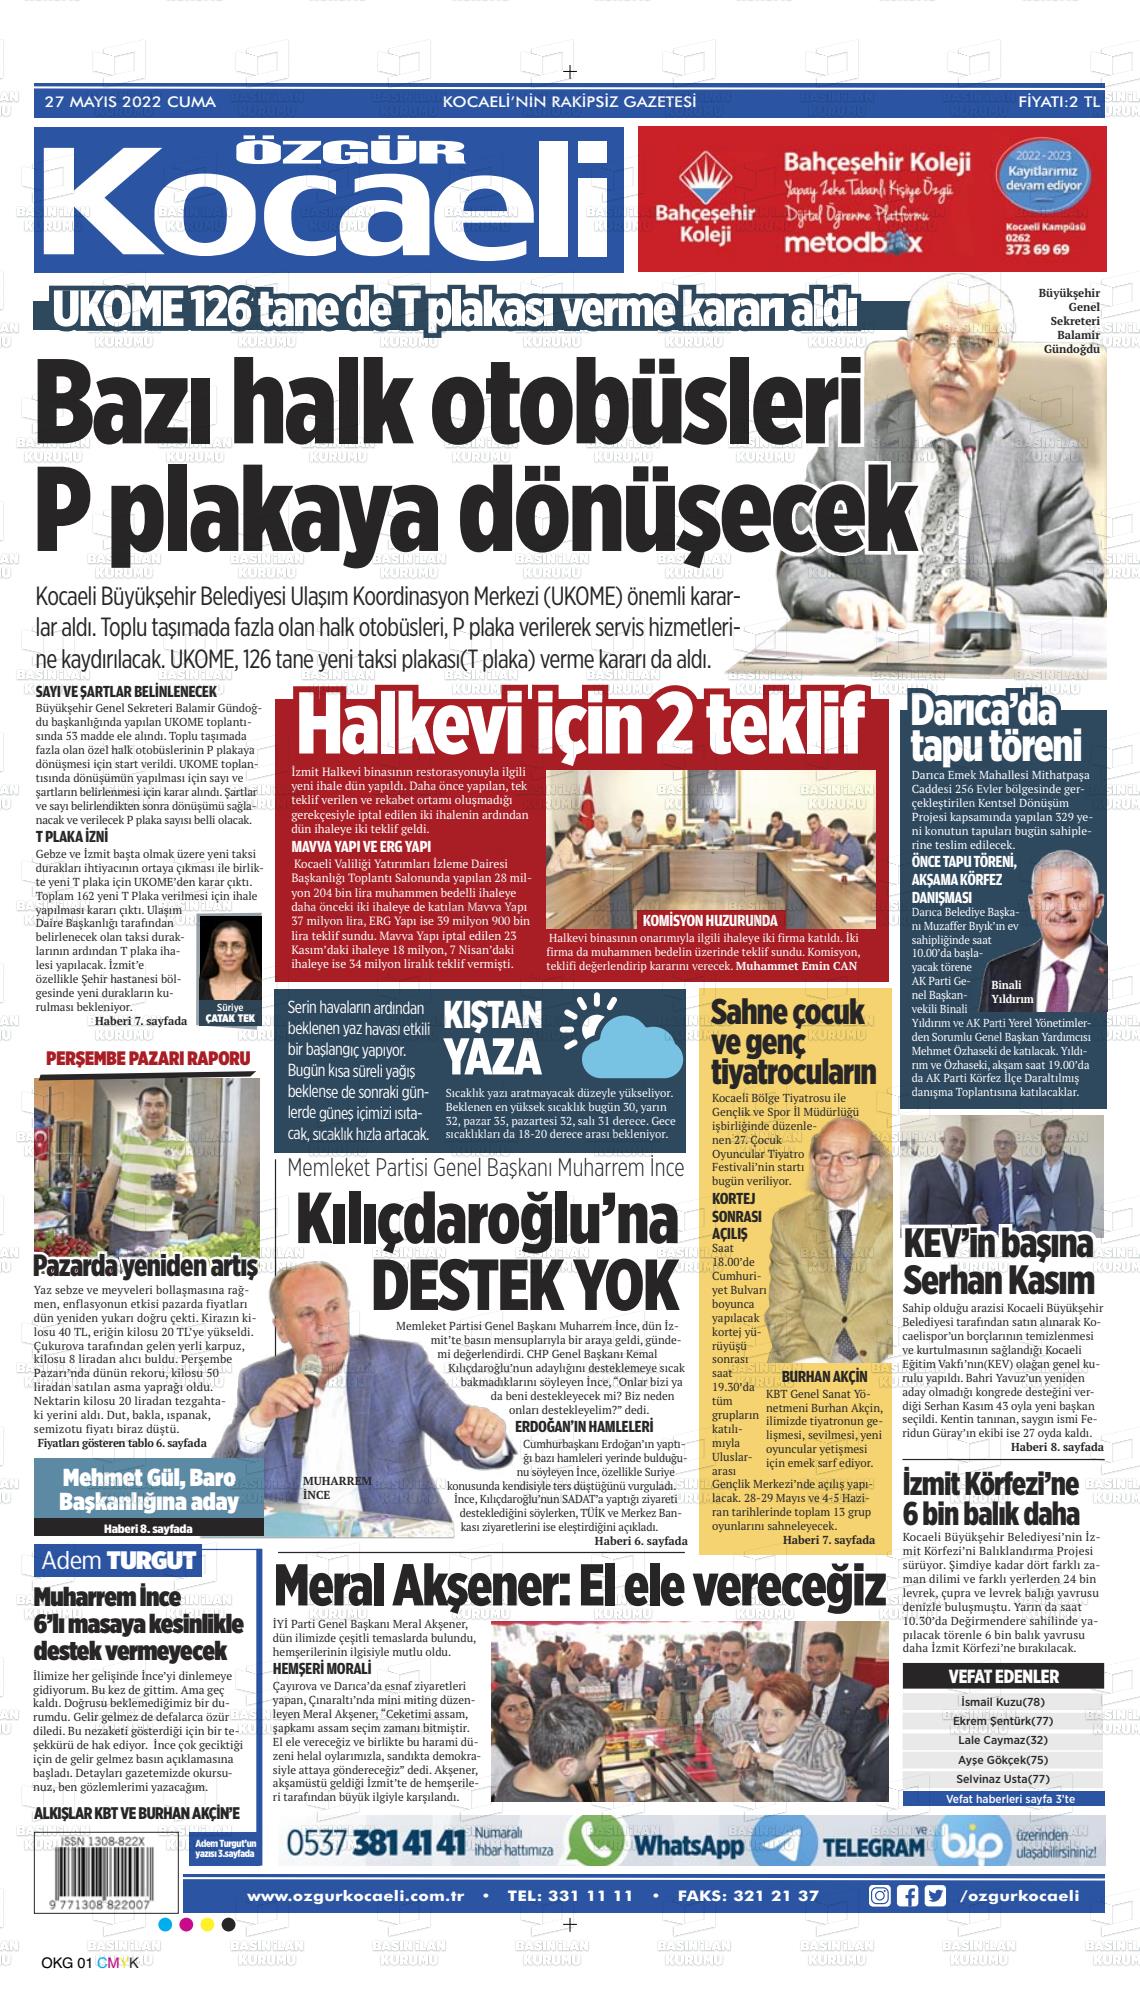 27 Mayıs 2022 Özgür Kocaeli Gazete Manşeti